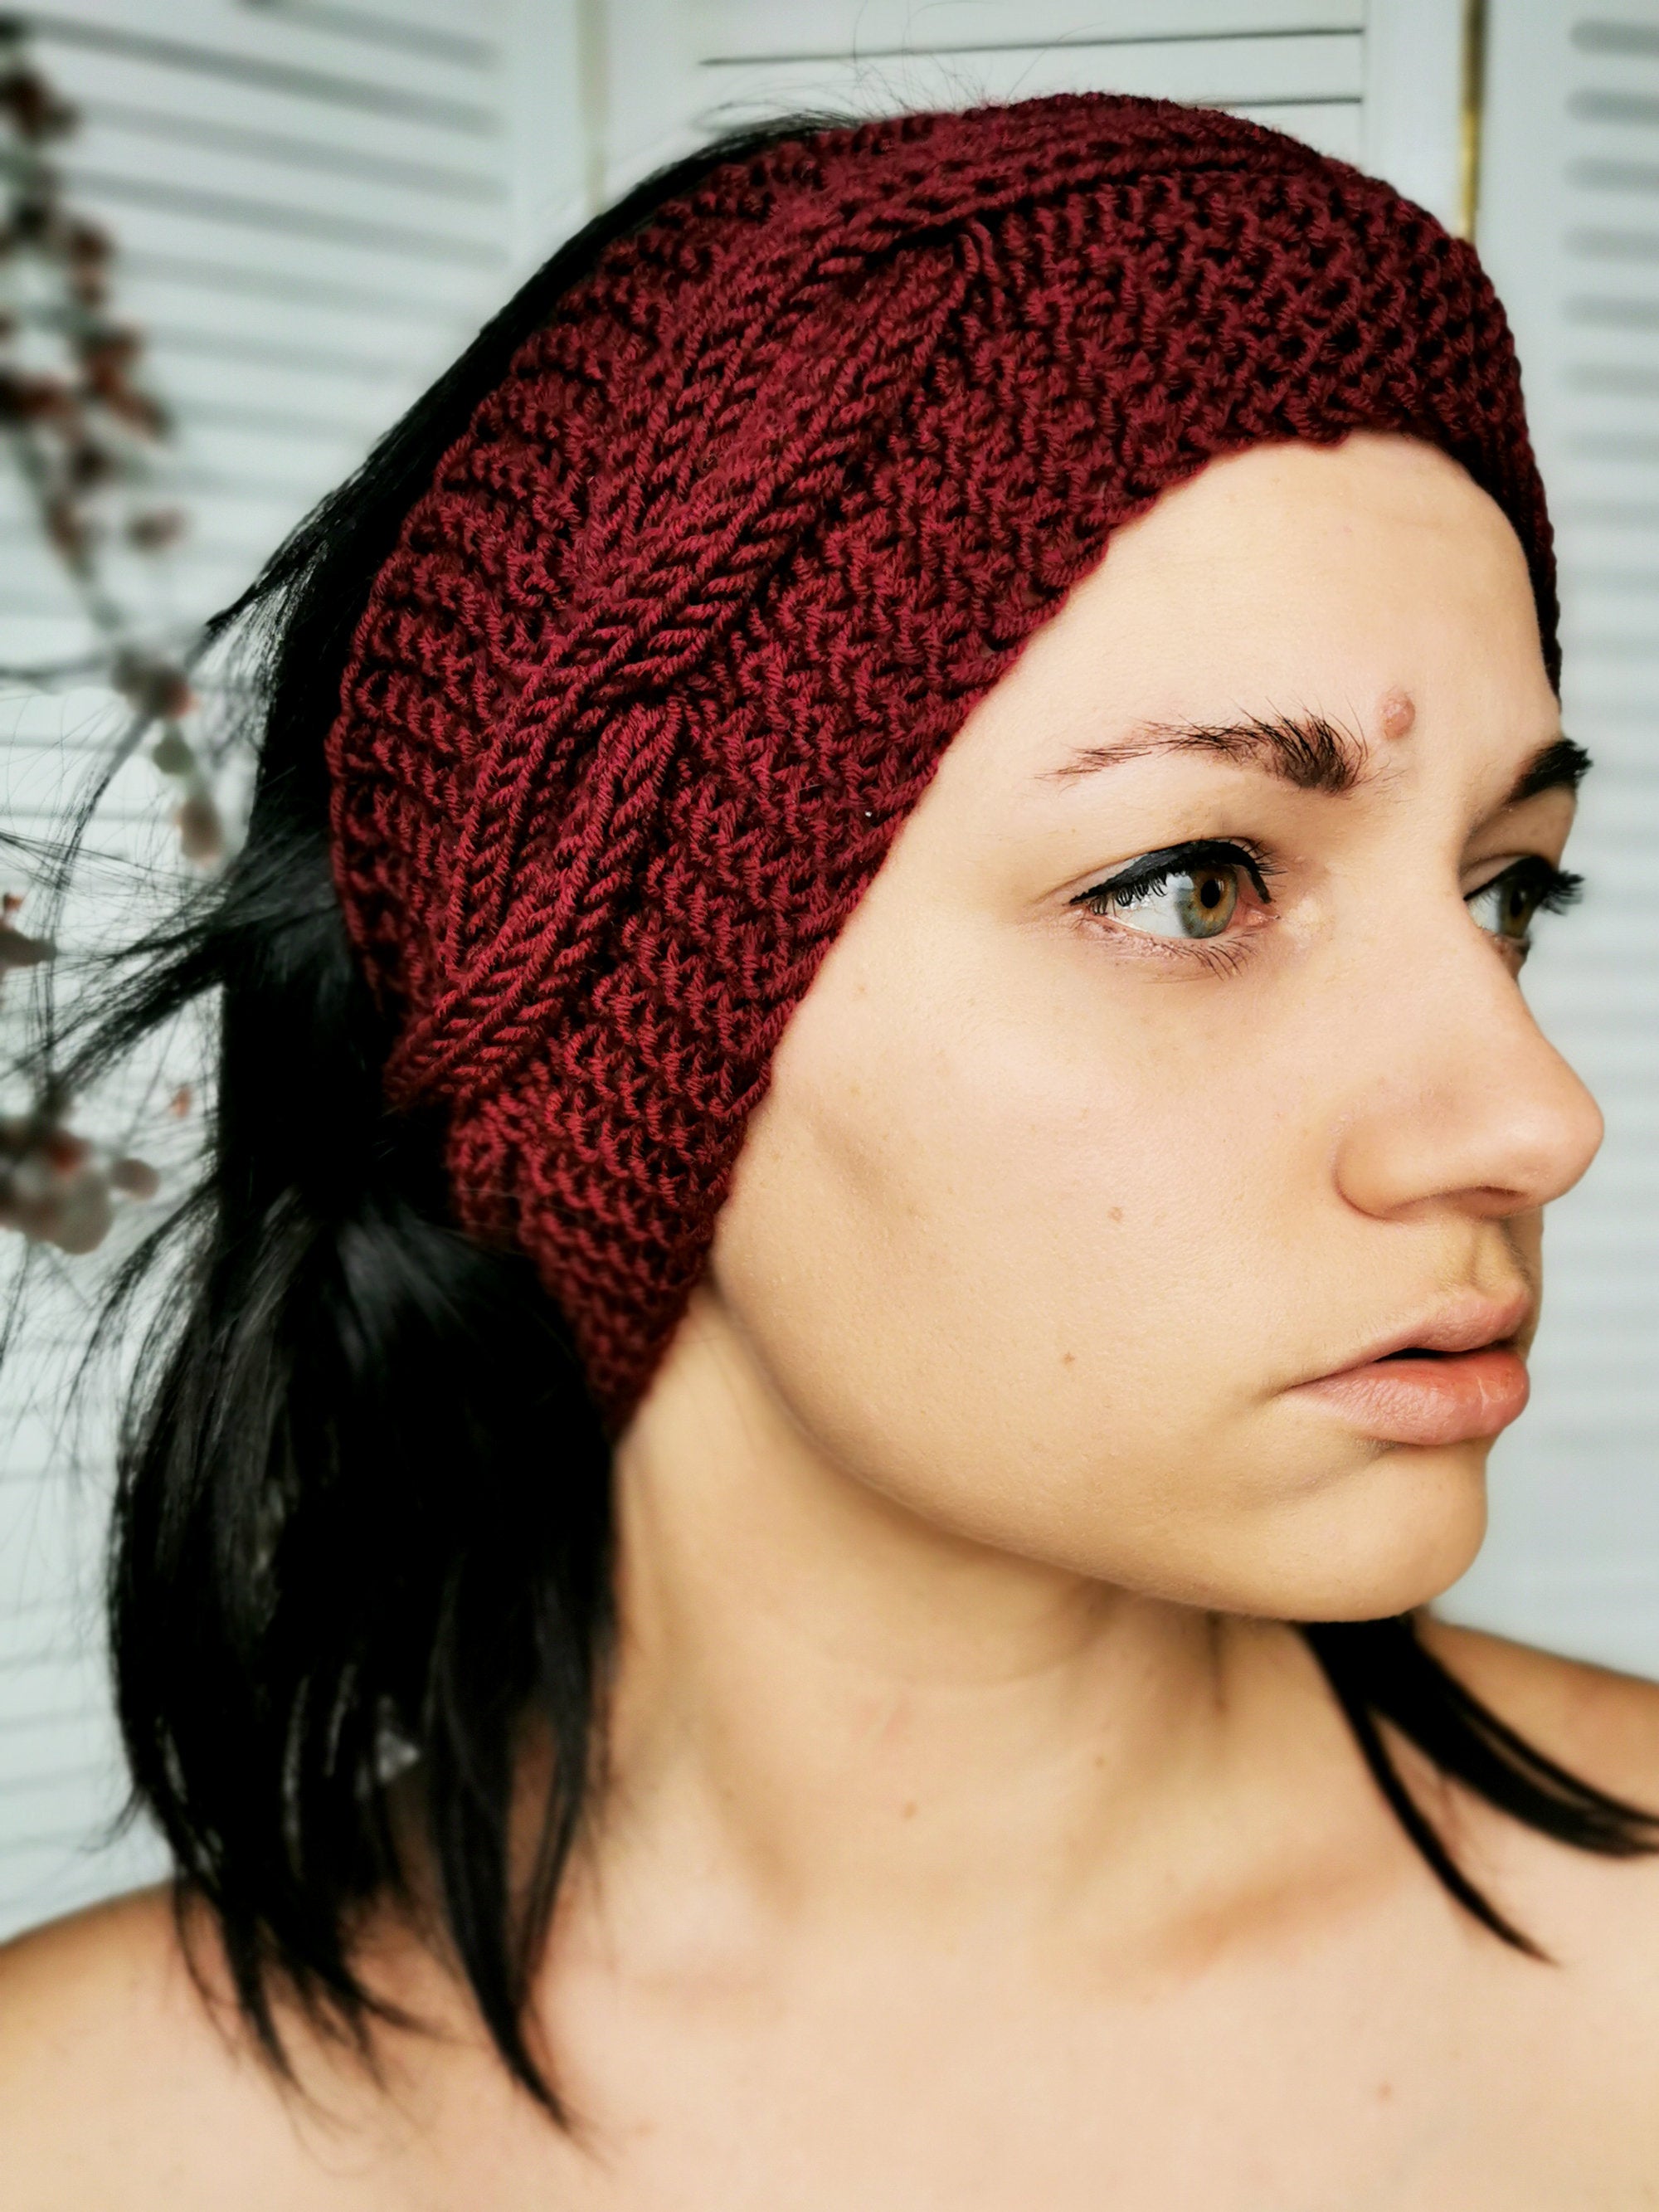 Merino wool handmade knitted winter headband in burgundy